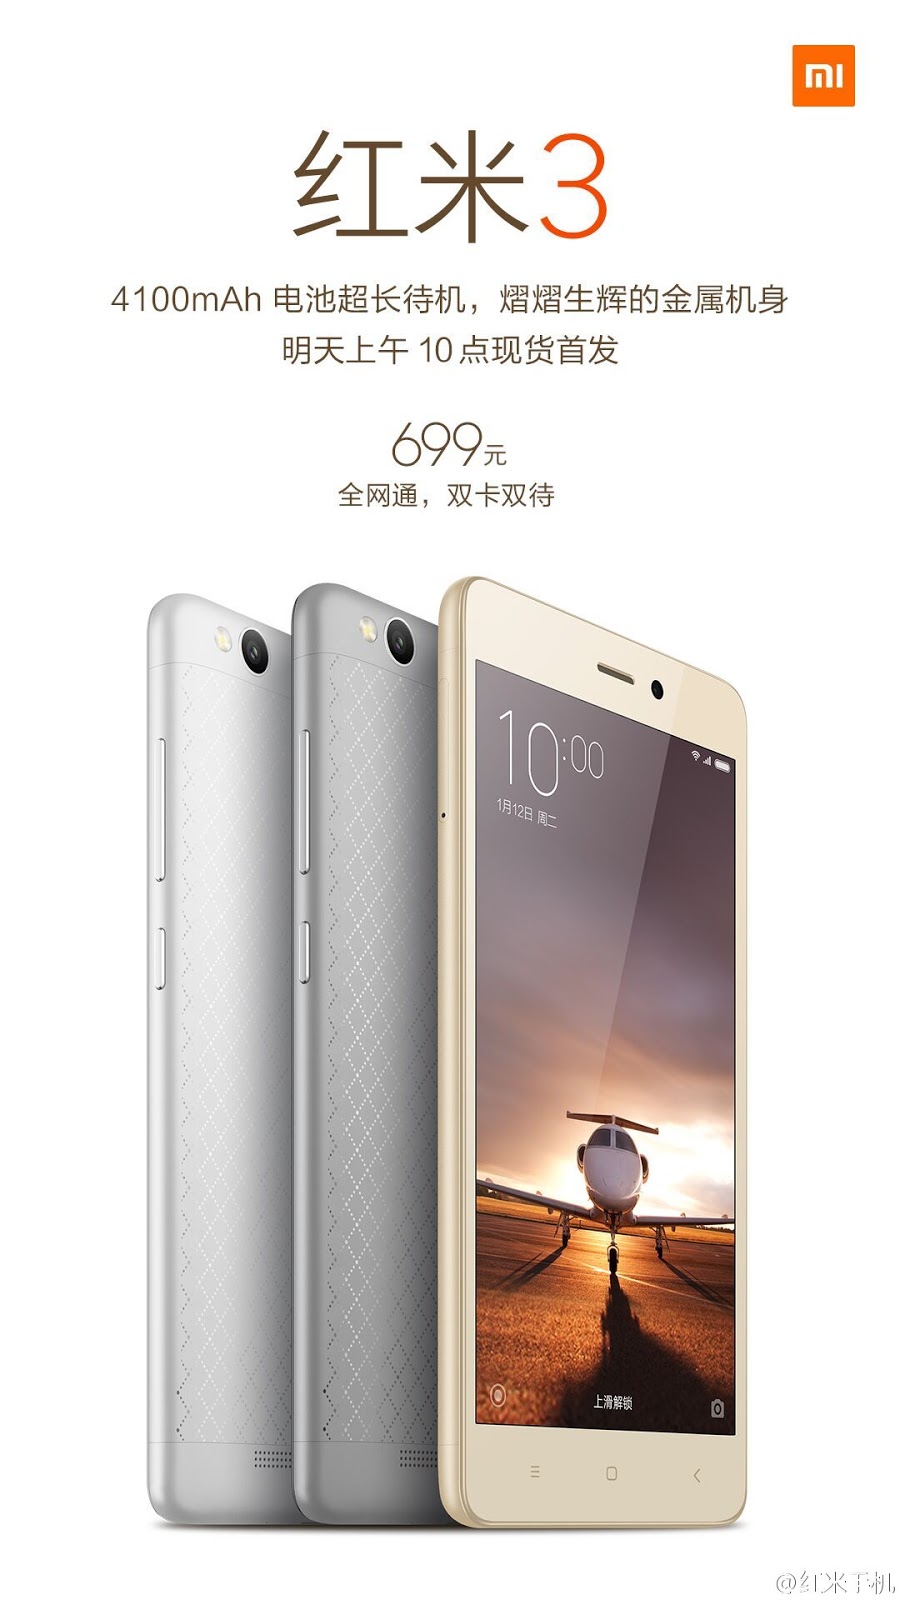 Xiaomi Redmi 3 Dengan Kamera 13 MP Snapdragon 616 Dihargai 699 Yuan